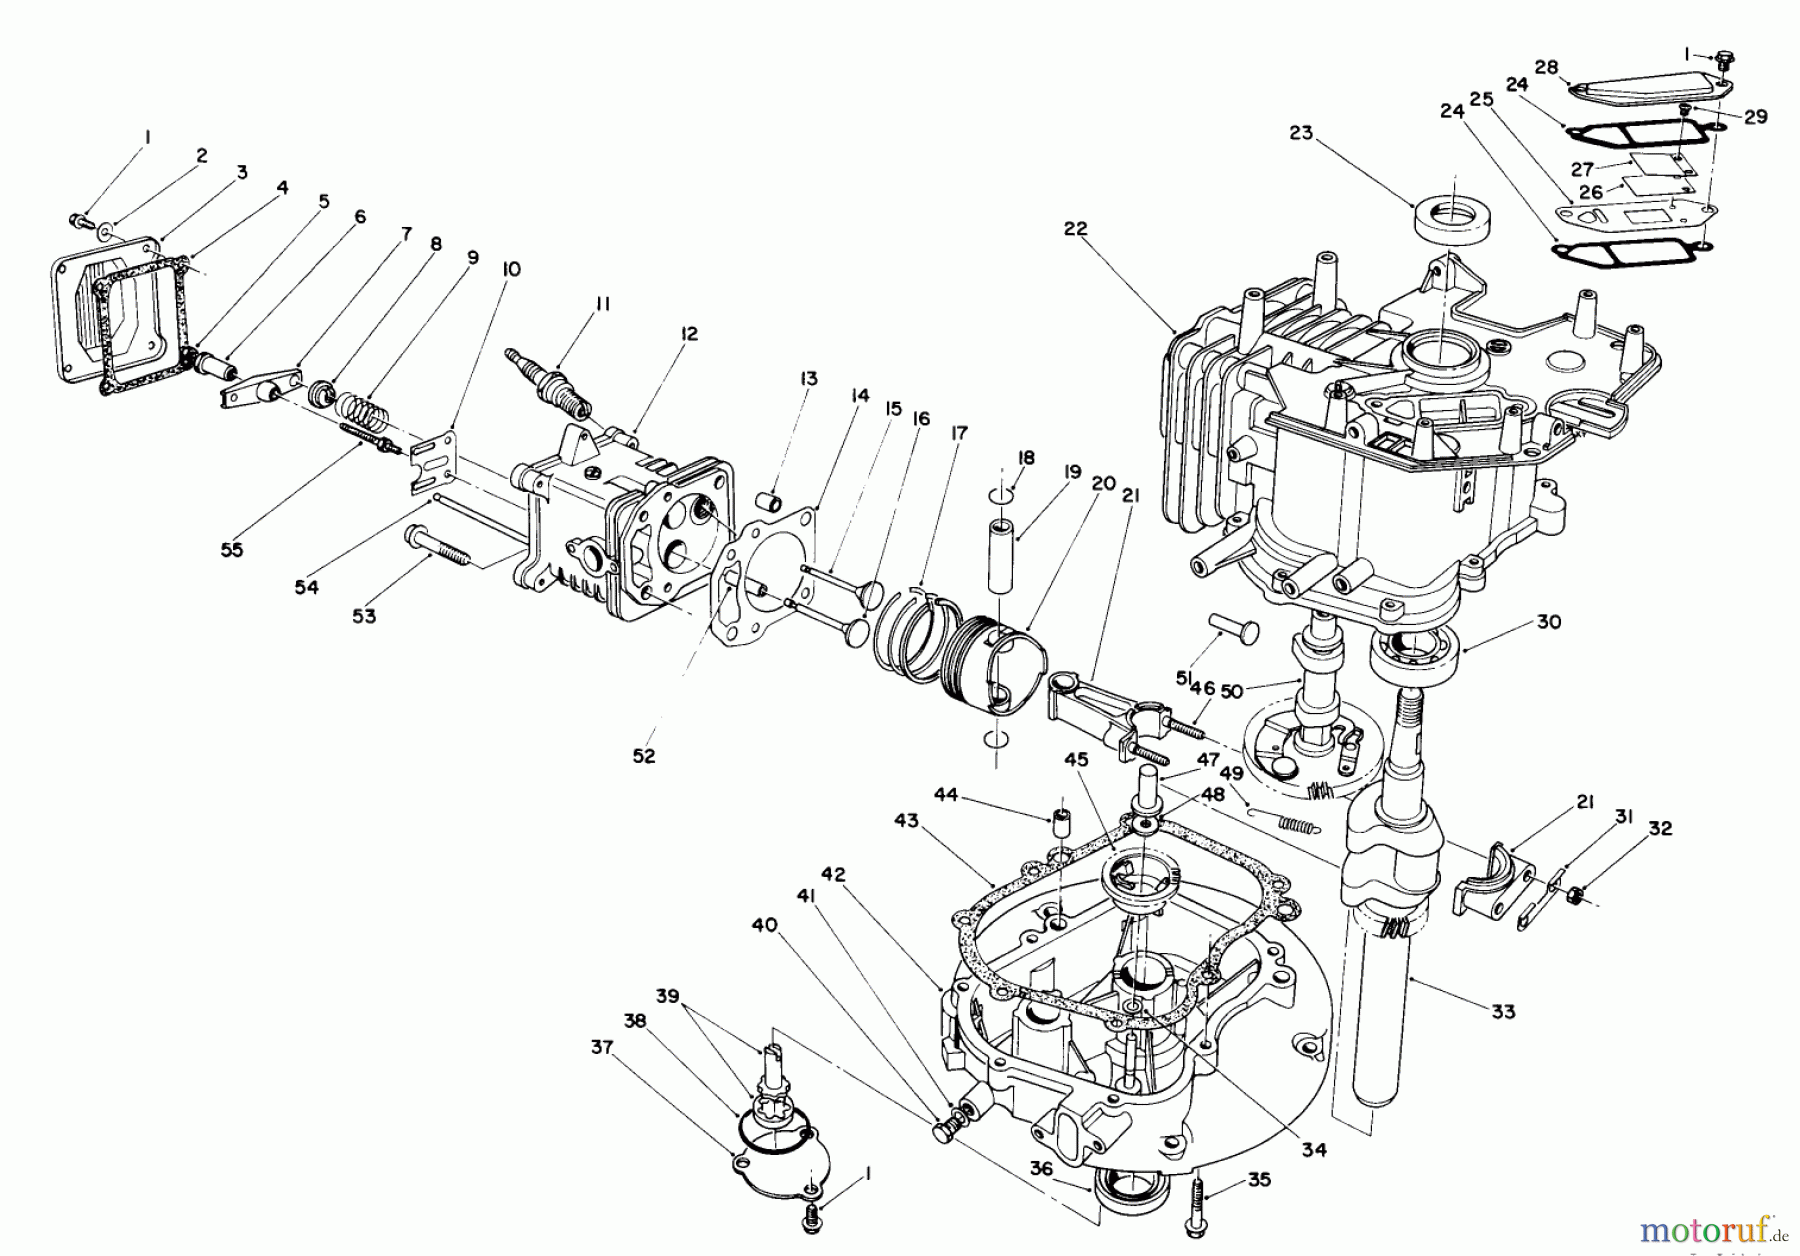  Toro Neu Mowers, Walk-Behind Seite 2 26620BG - Toro Lawnmower, 1991 (1000001-1999999) CRANKCASE ASSEMBLY (ENGINE NO. VM140)